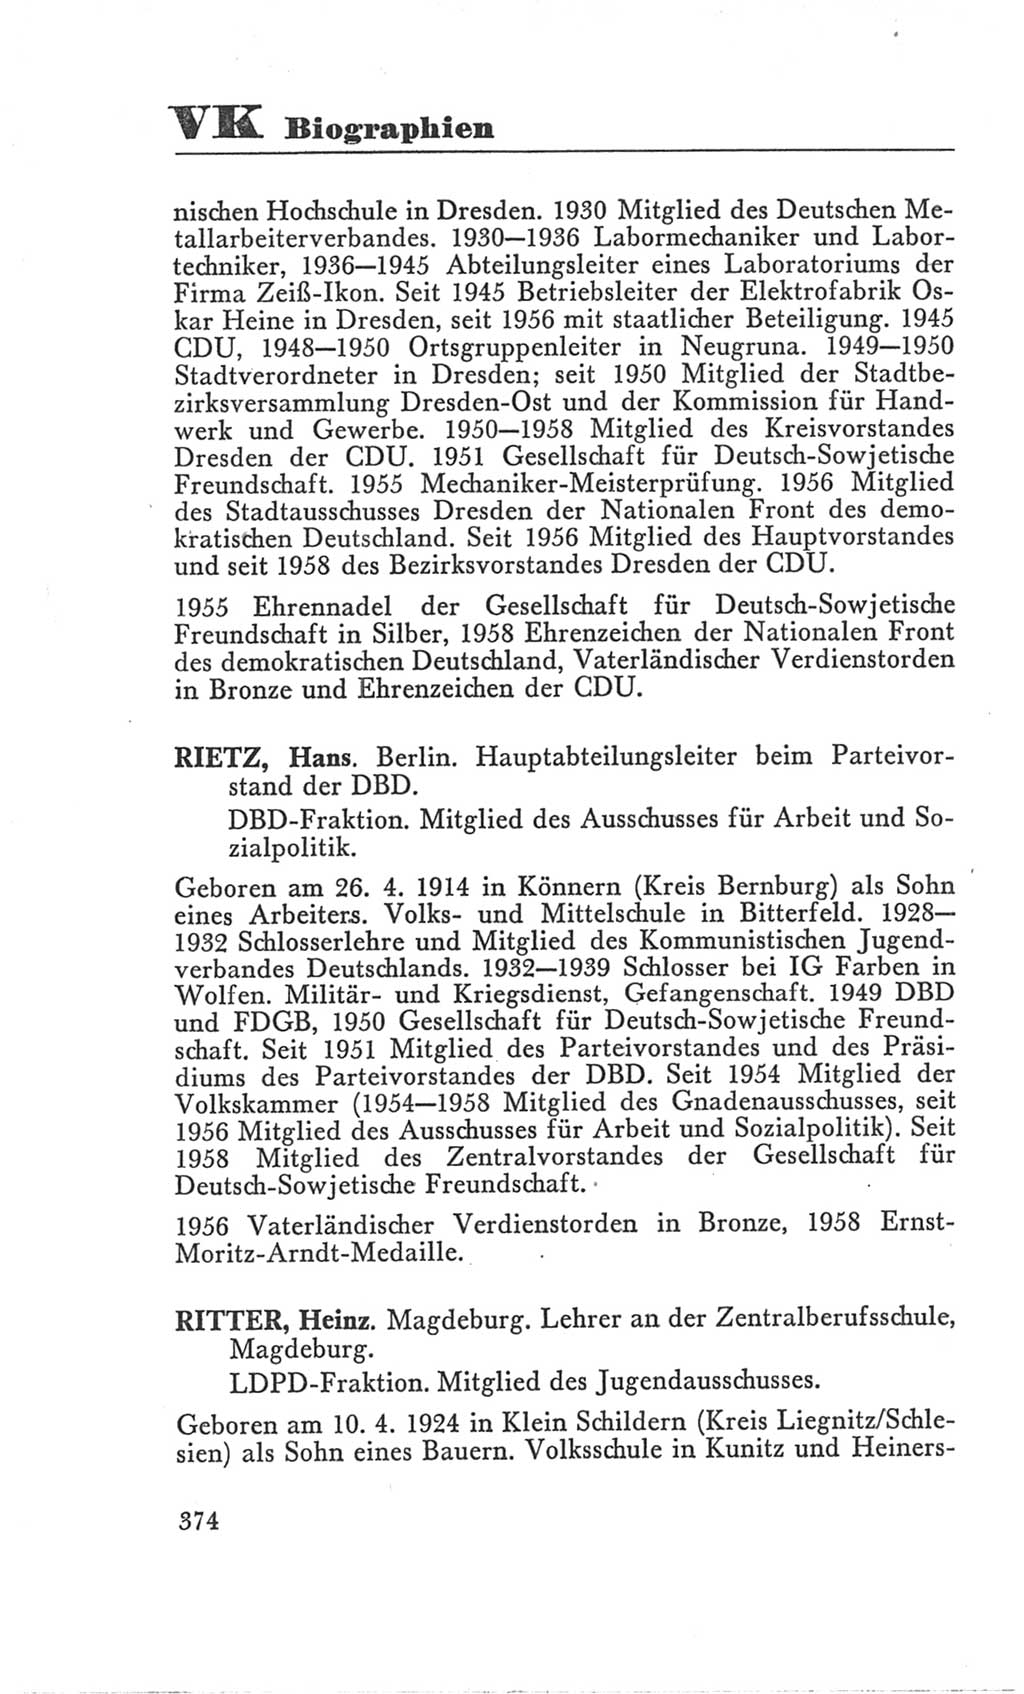 Handbuch der Volkskammer (VK) der Deutschen Demokratischen Republik (DDR), 3. Wahlperiode 1958-1963, Seite 374 (Hdb. VK. DDR 3. WP. 1958-1963, S. 374)